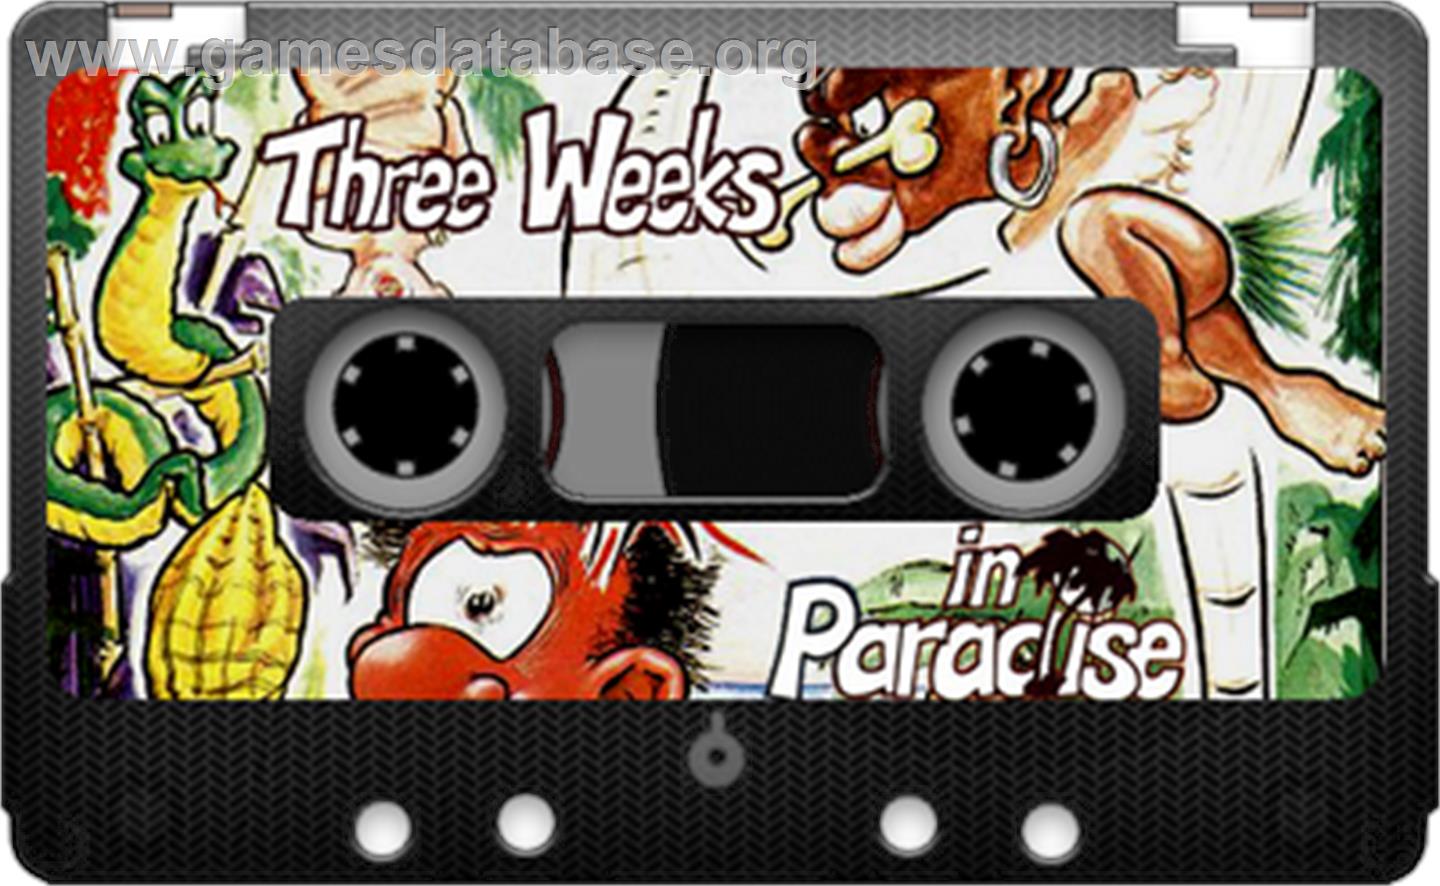 Three Weeks in Paradise - Sinclair ZX Spectrum - Artwork - Cartridge